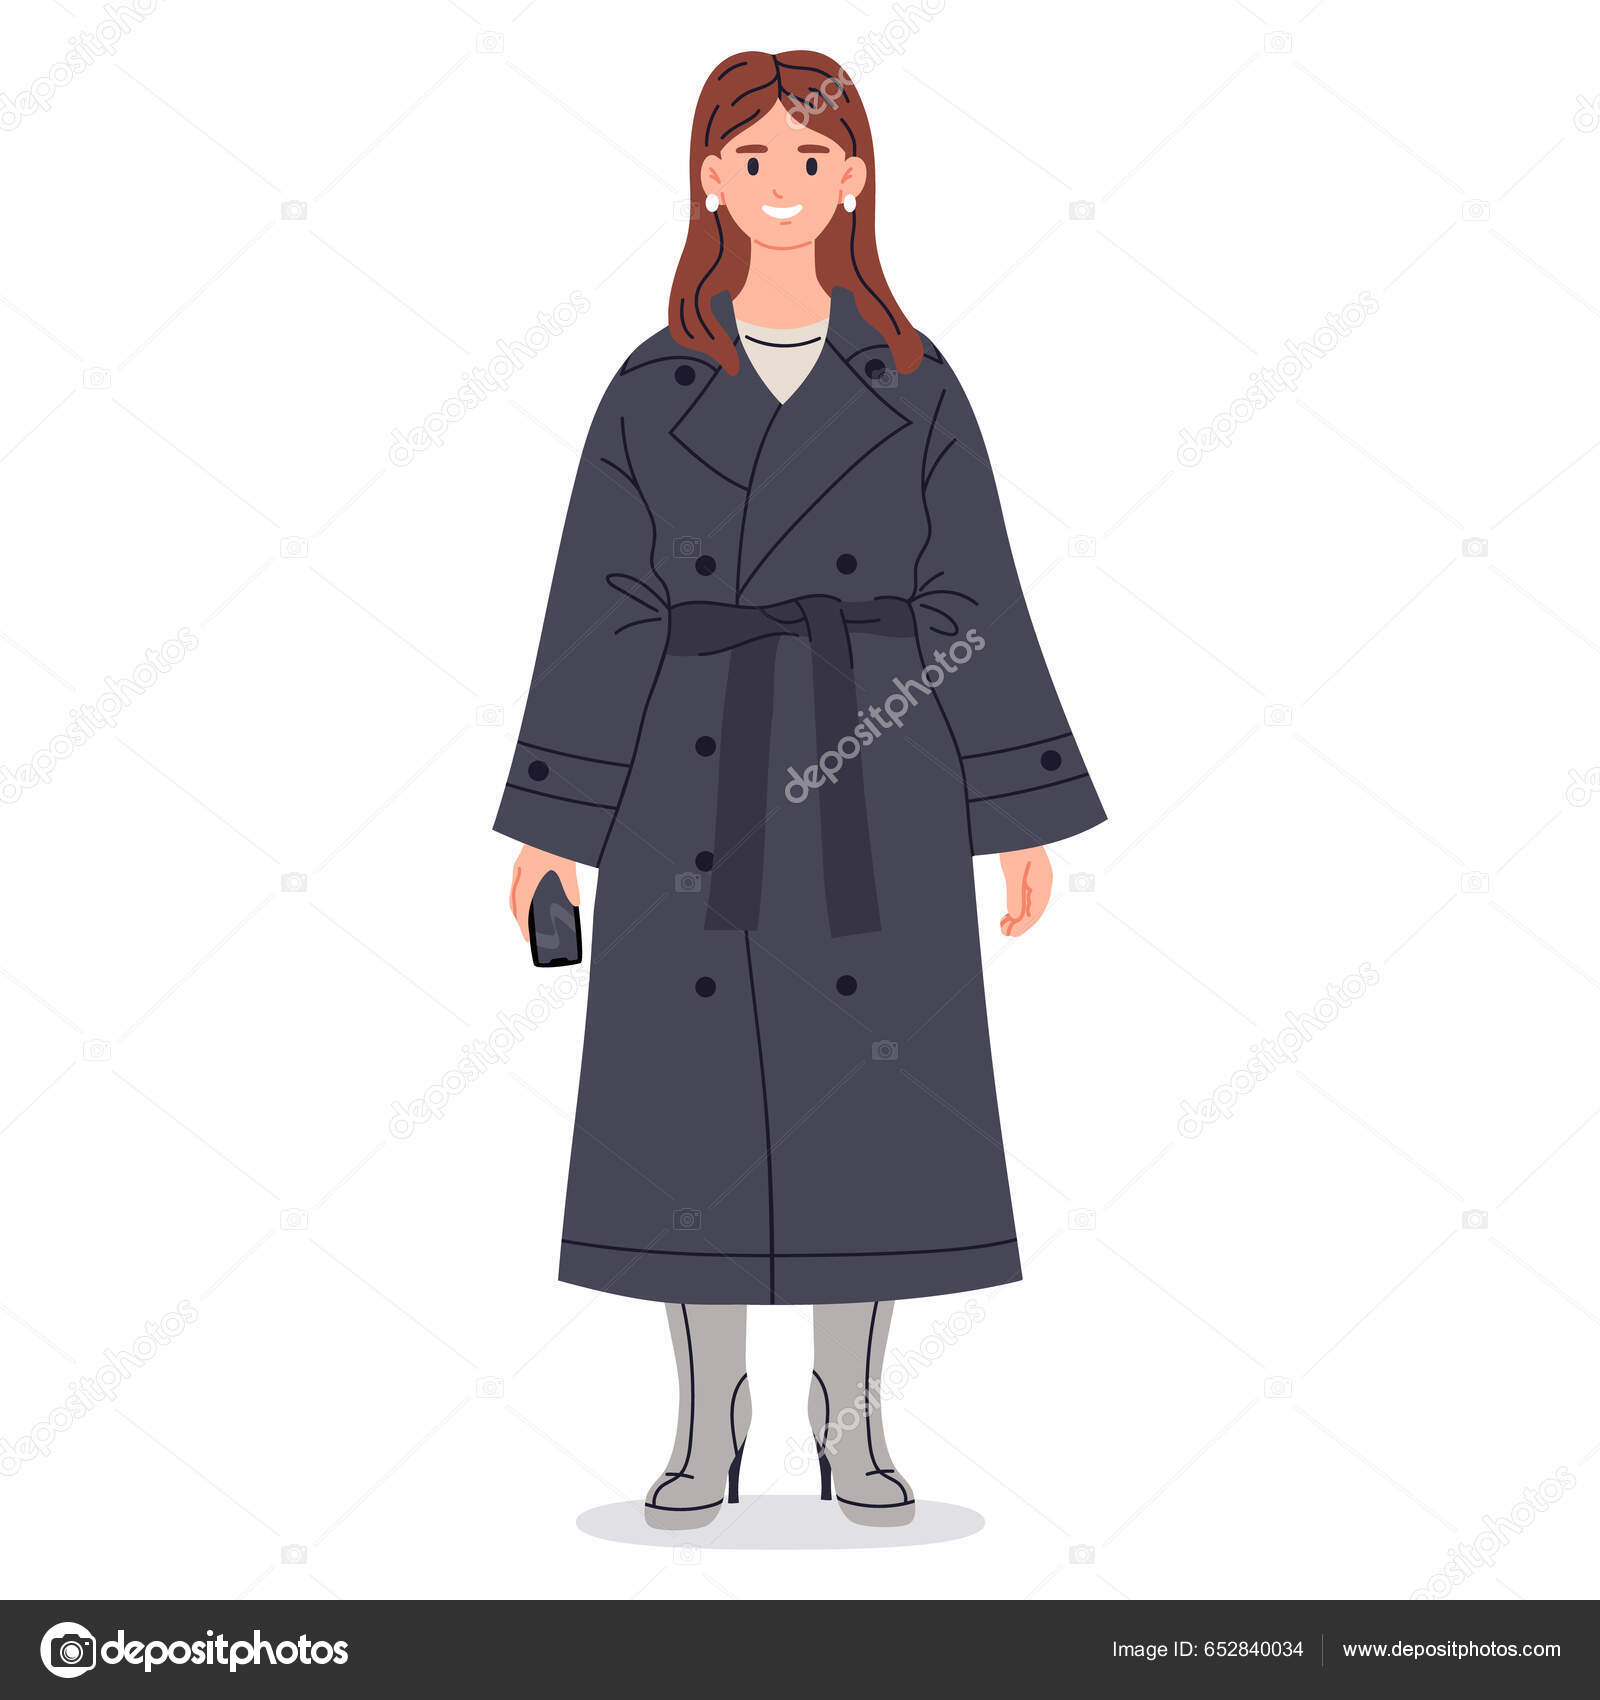 Manteau femme images vectorielles, Manteau femme vecteurs libres de droits  | Depositphotos